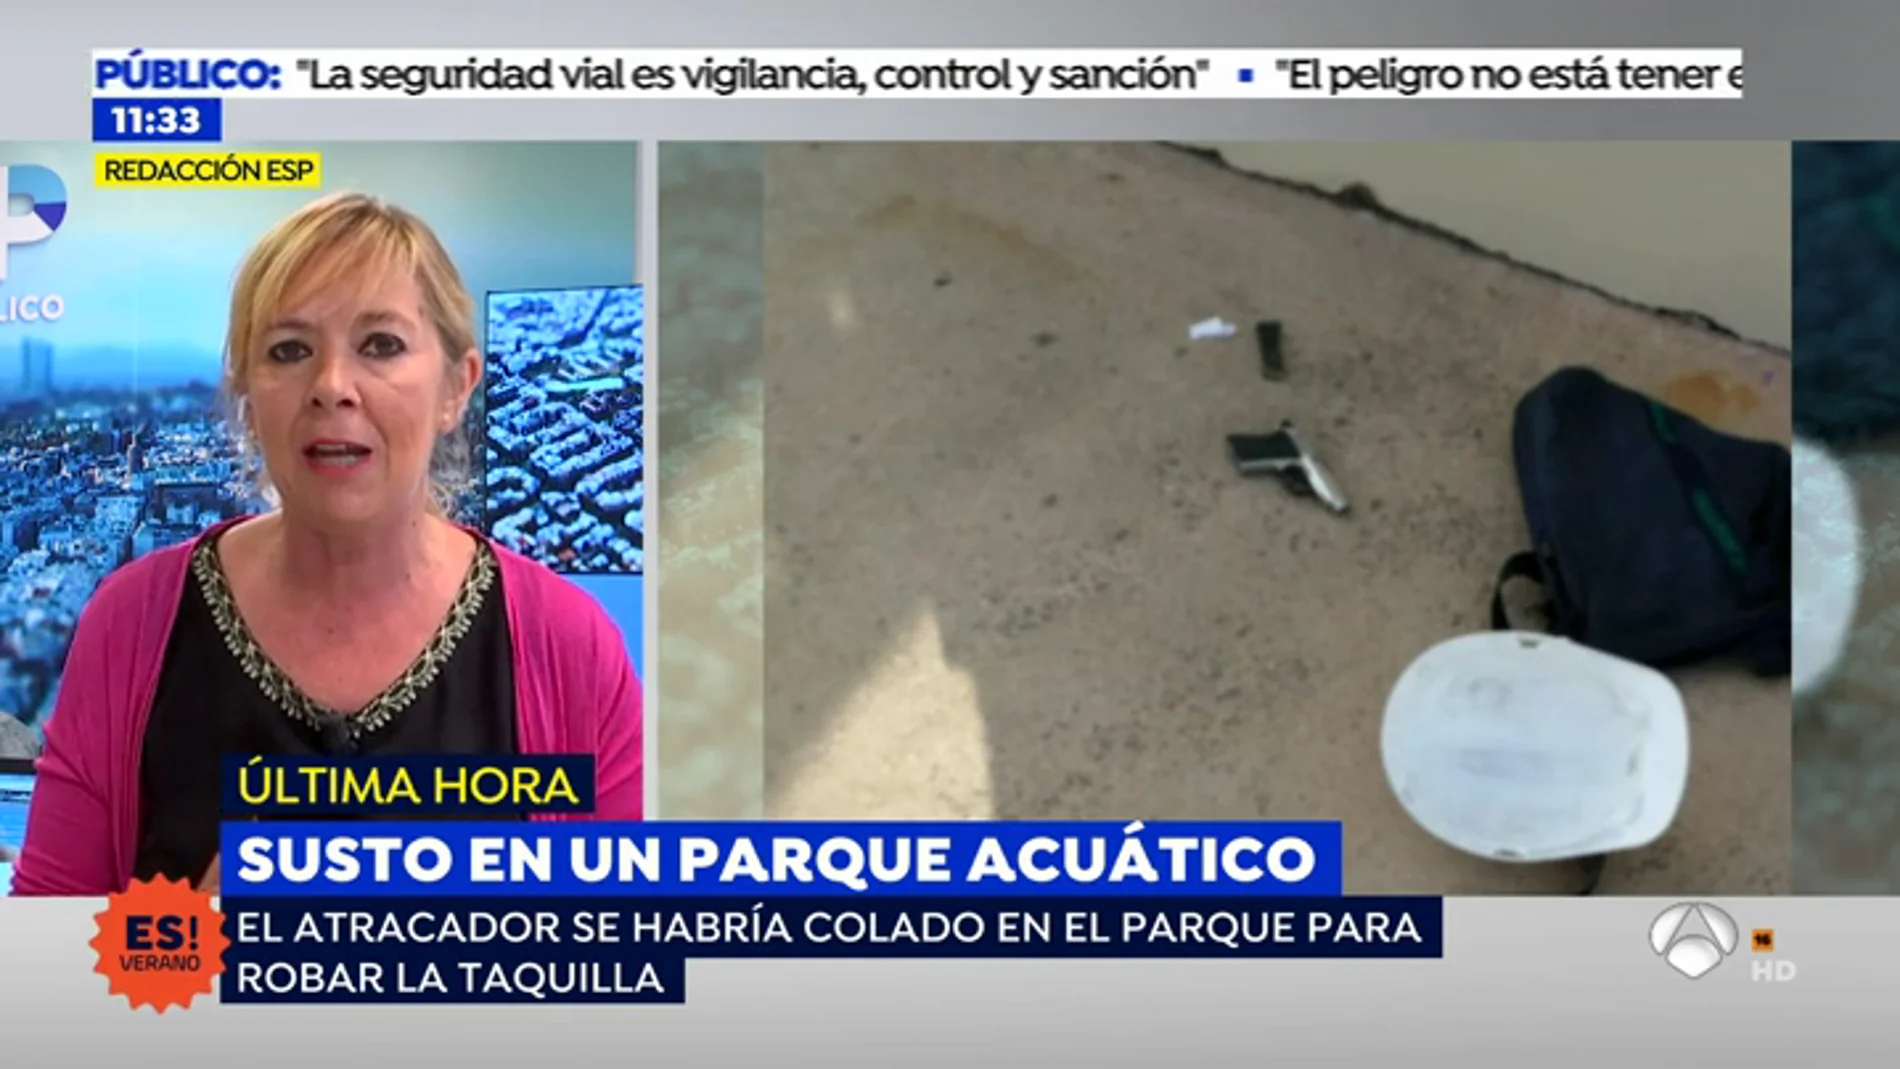 Se pide colaboración ciudadana tras el intento de atraco en un parque acuático de Torremolinos